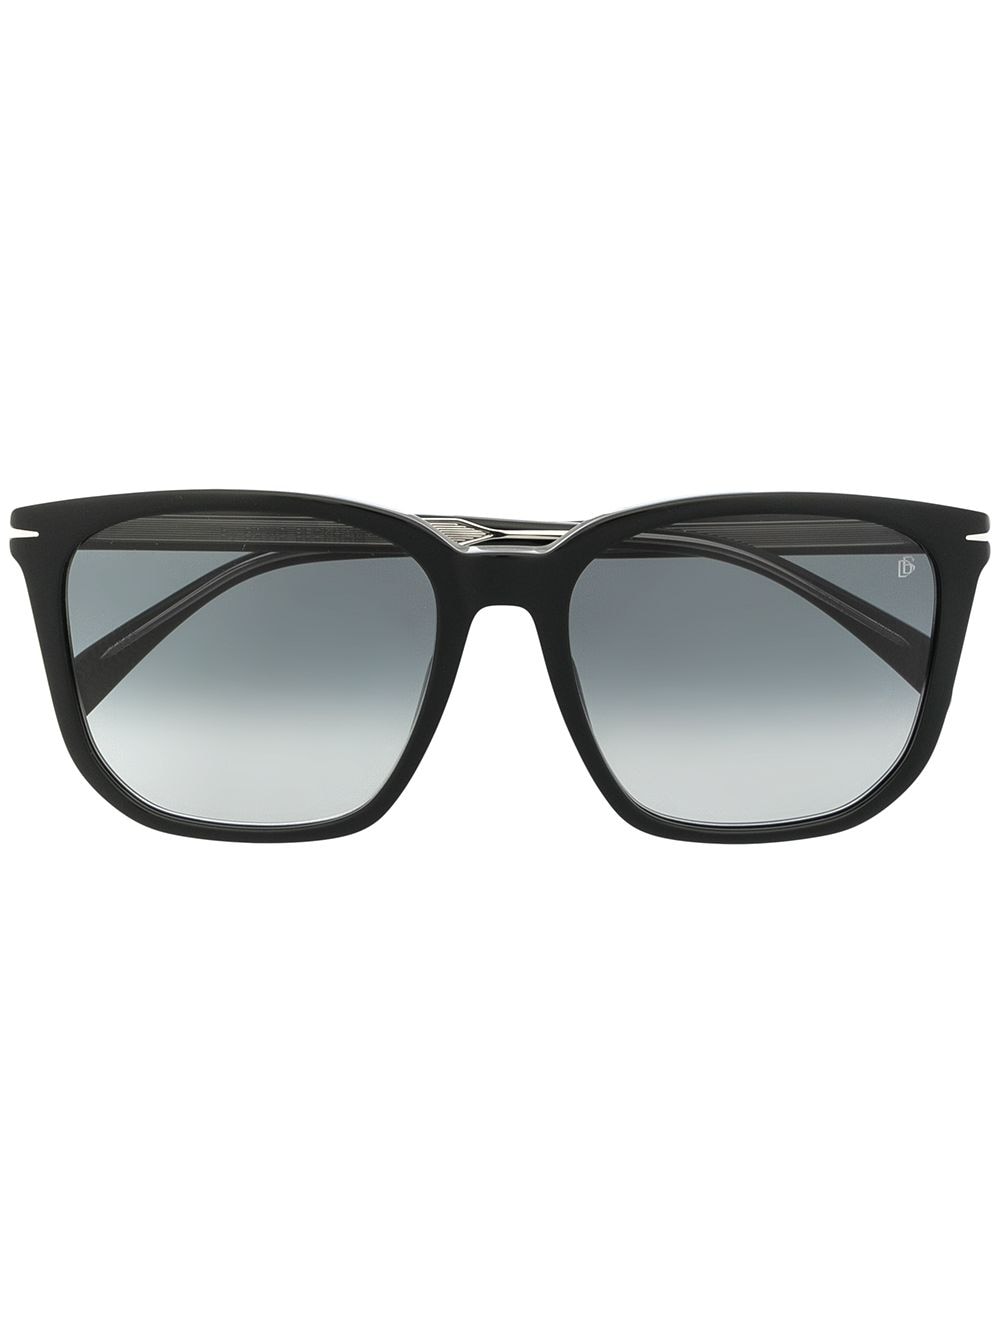 фото Eyewear by david beckham солнцезащитные очки в квадратной оправе